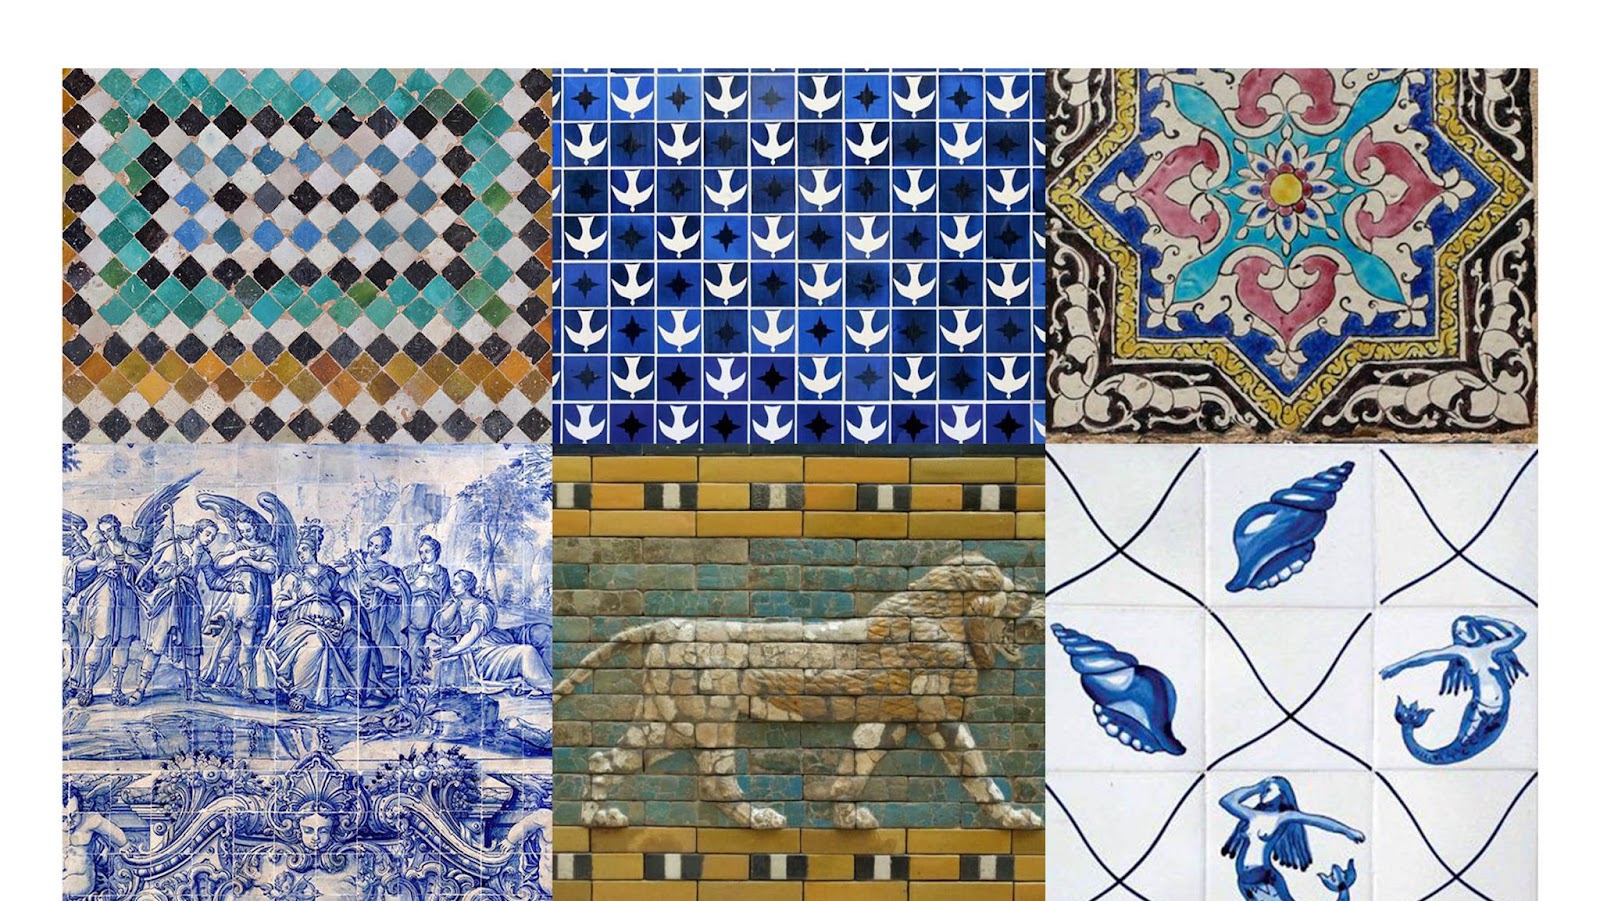 Conjunto de azulejos históricos para ilustrar a história dos azulejos